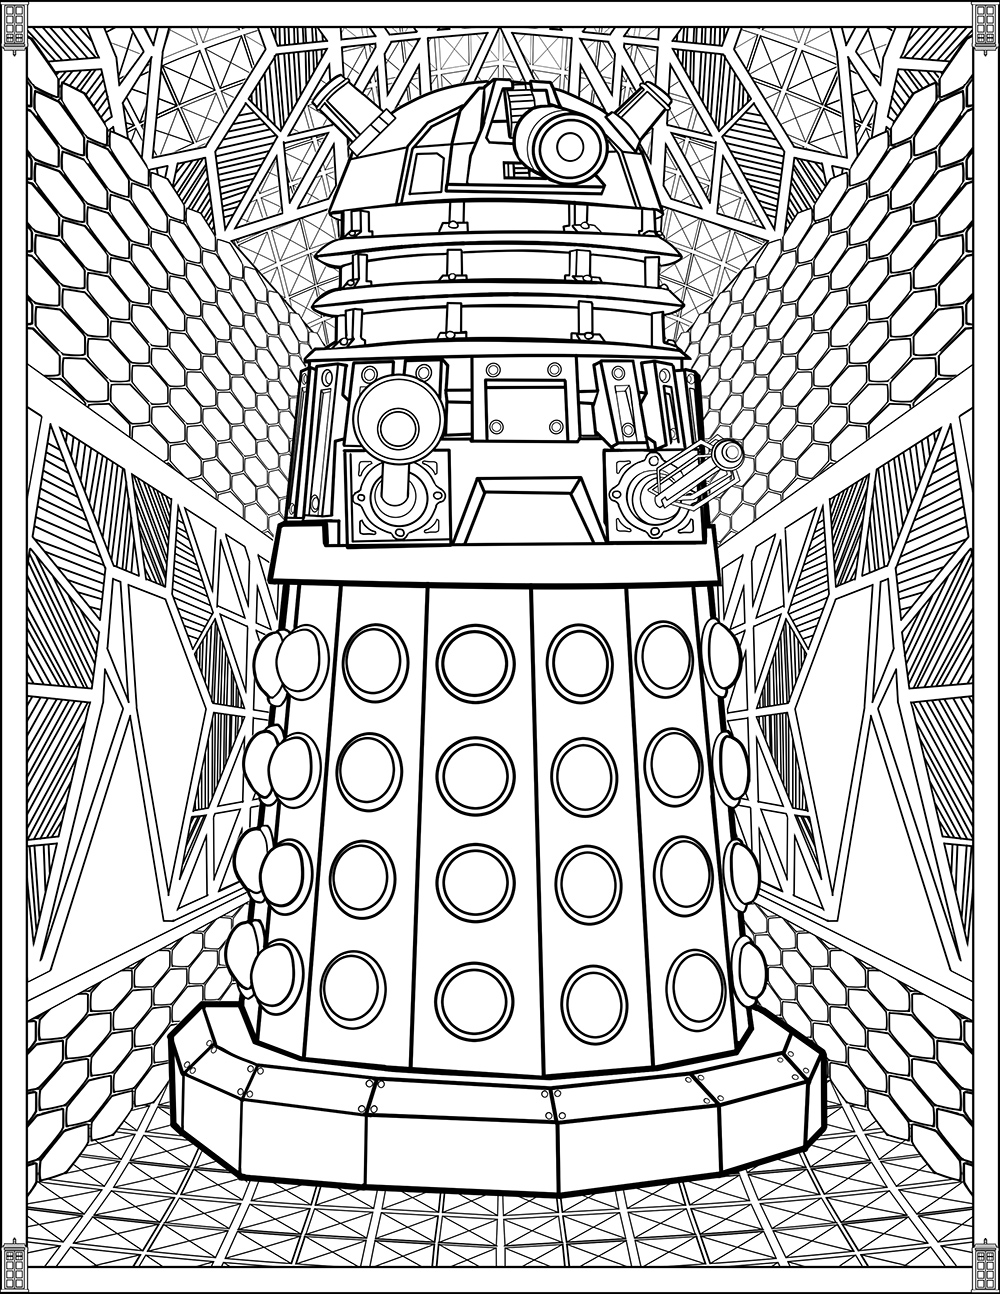 DALEK : Können Daleks mit ihrem Manipulatorarm Farben erzeugen?, Künstler : Brady Johnson   Quelle : fun